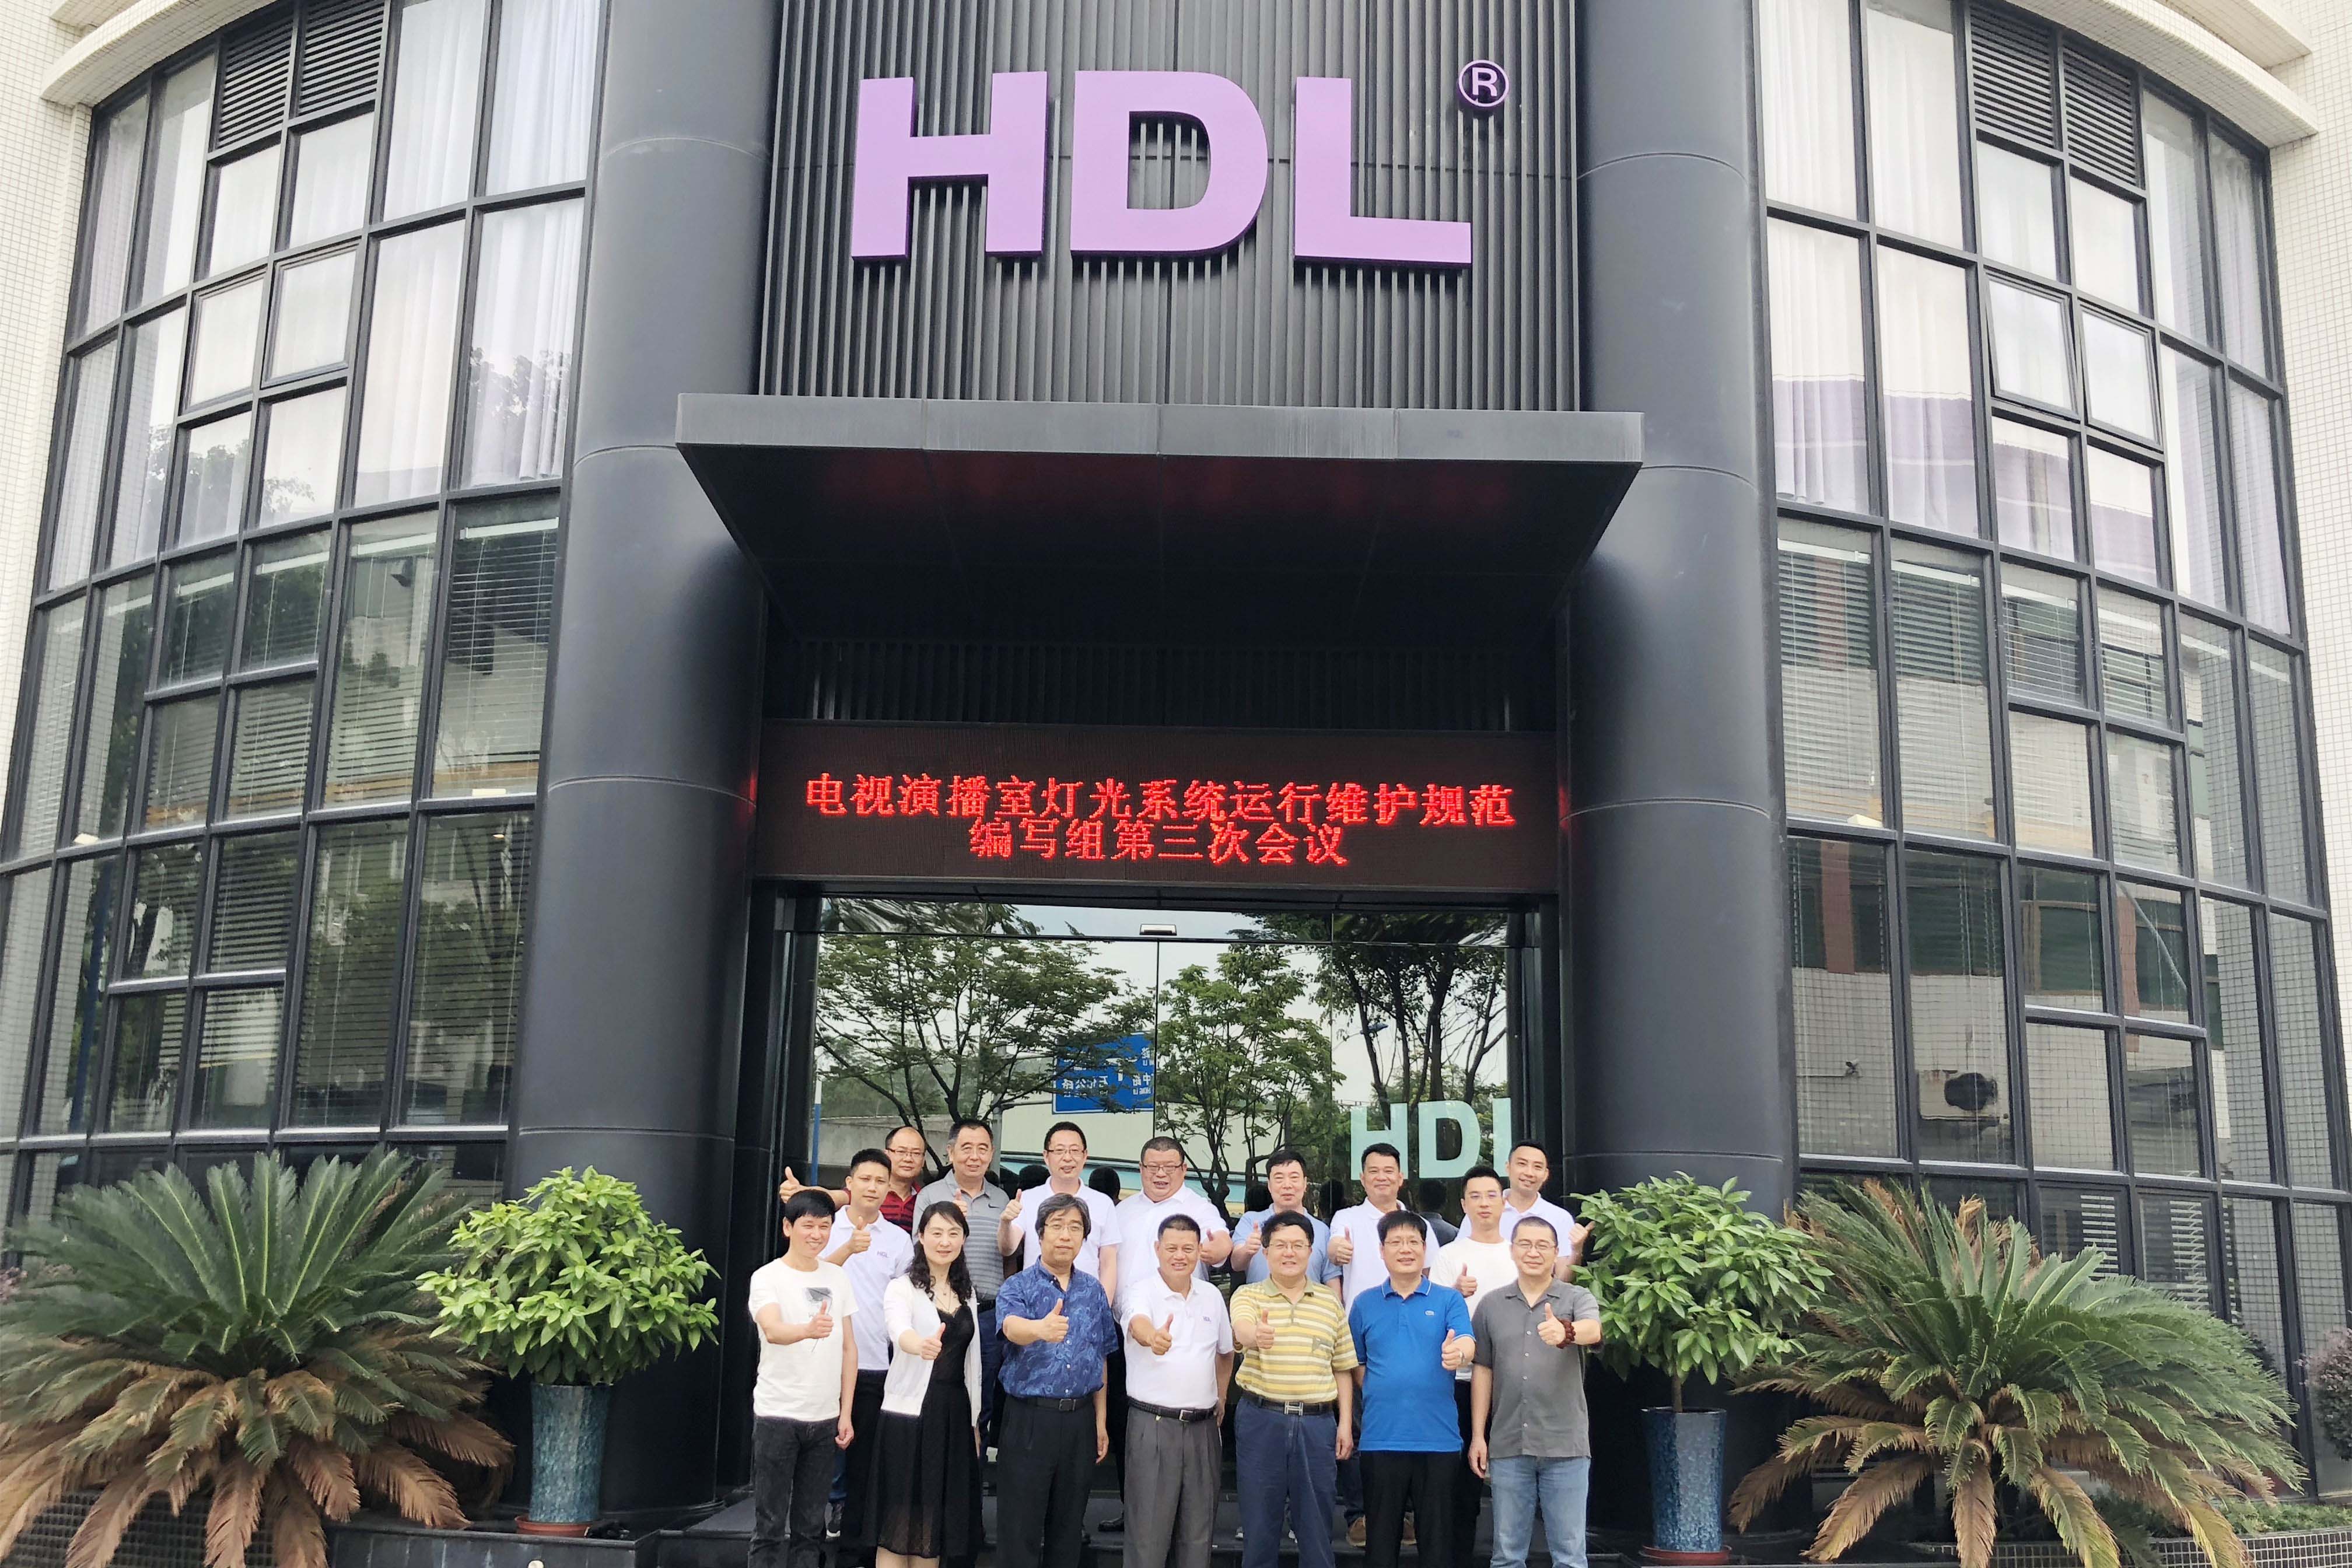 《电视演播室灯光系统运行维护规范》第三次会议在HDL智能体验中心召开